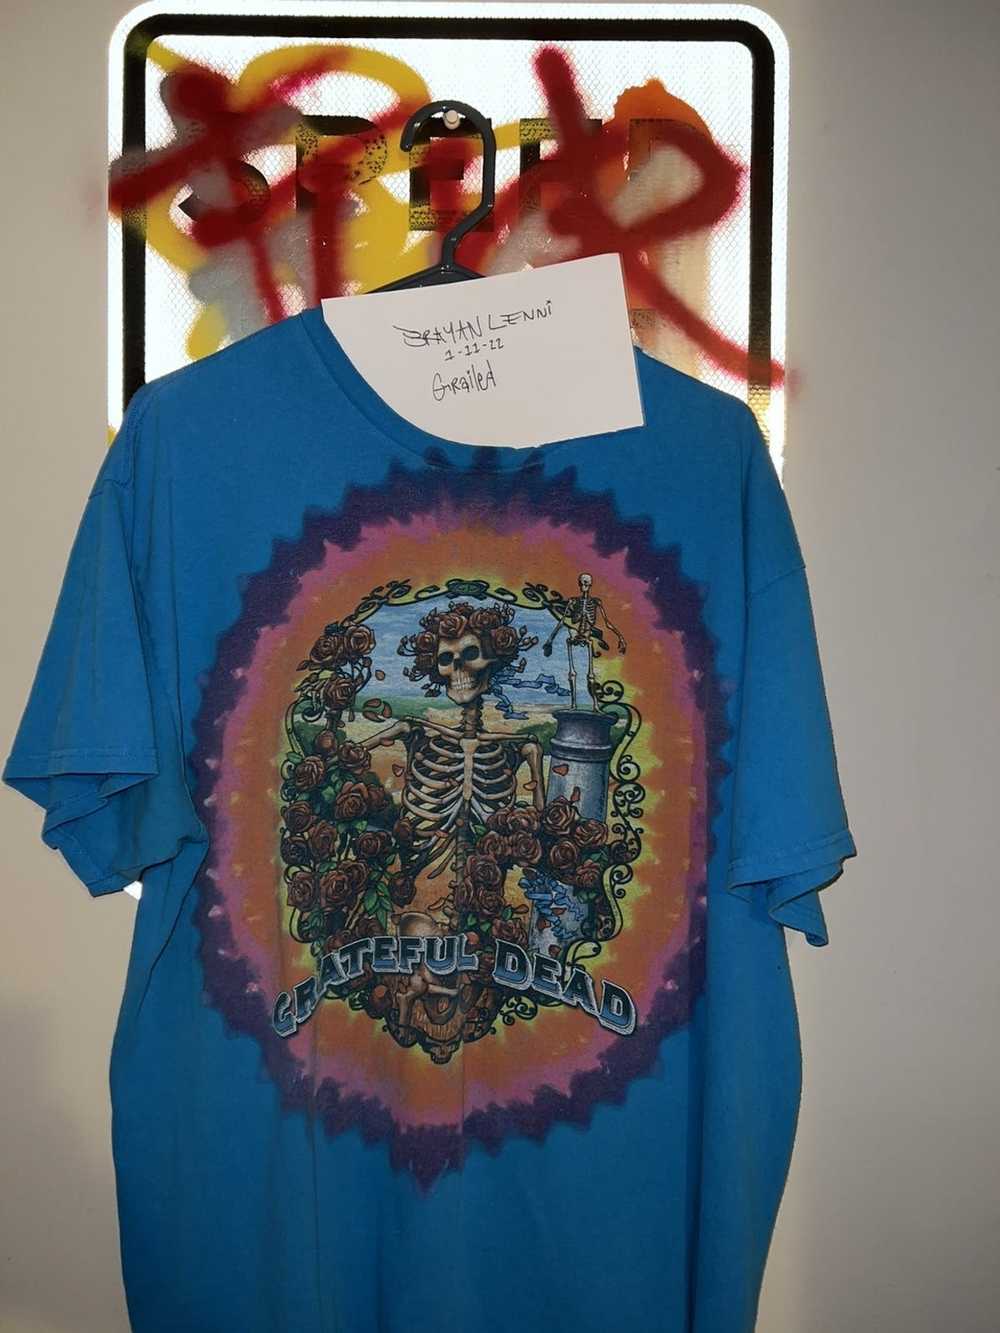 Grateful Dead Vintage Grateful Dead Shirt - image 2